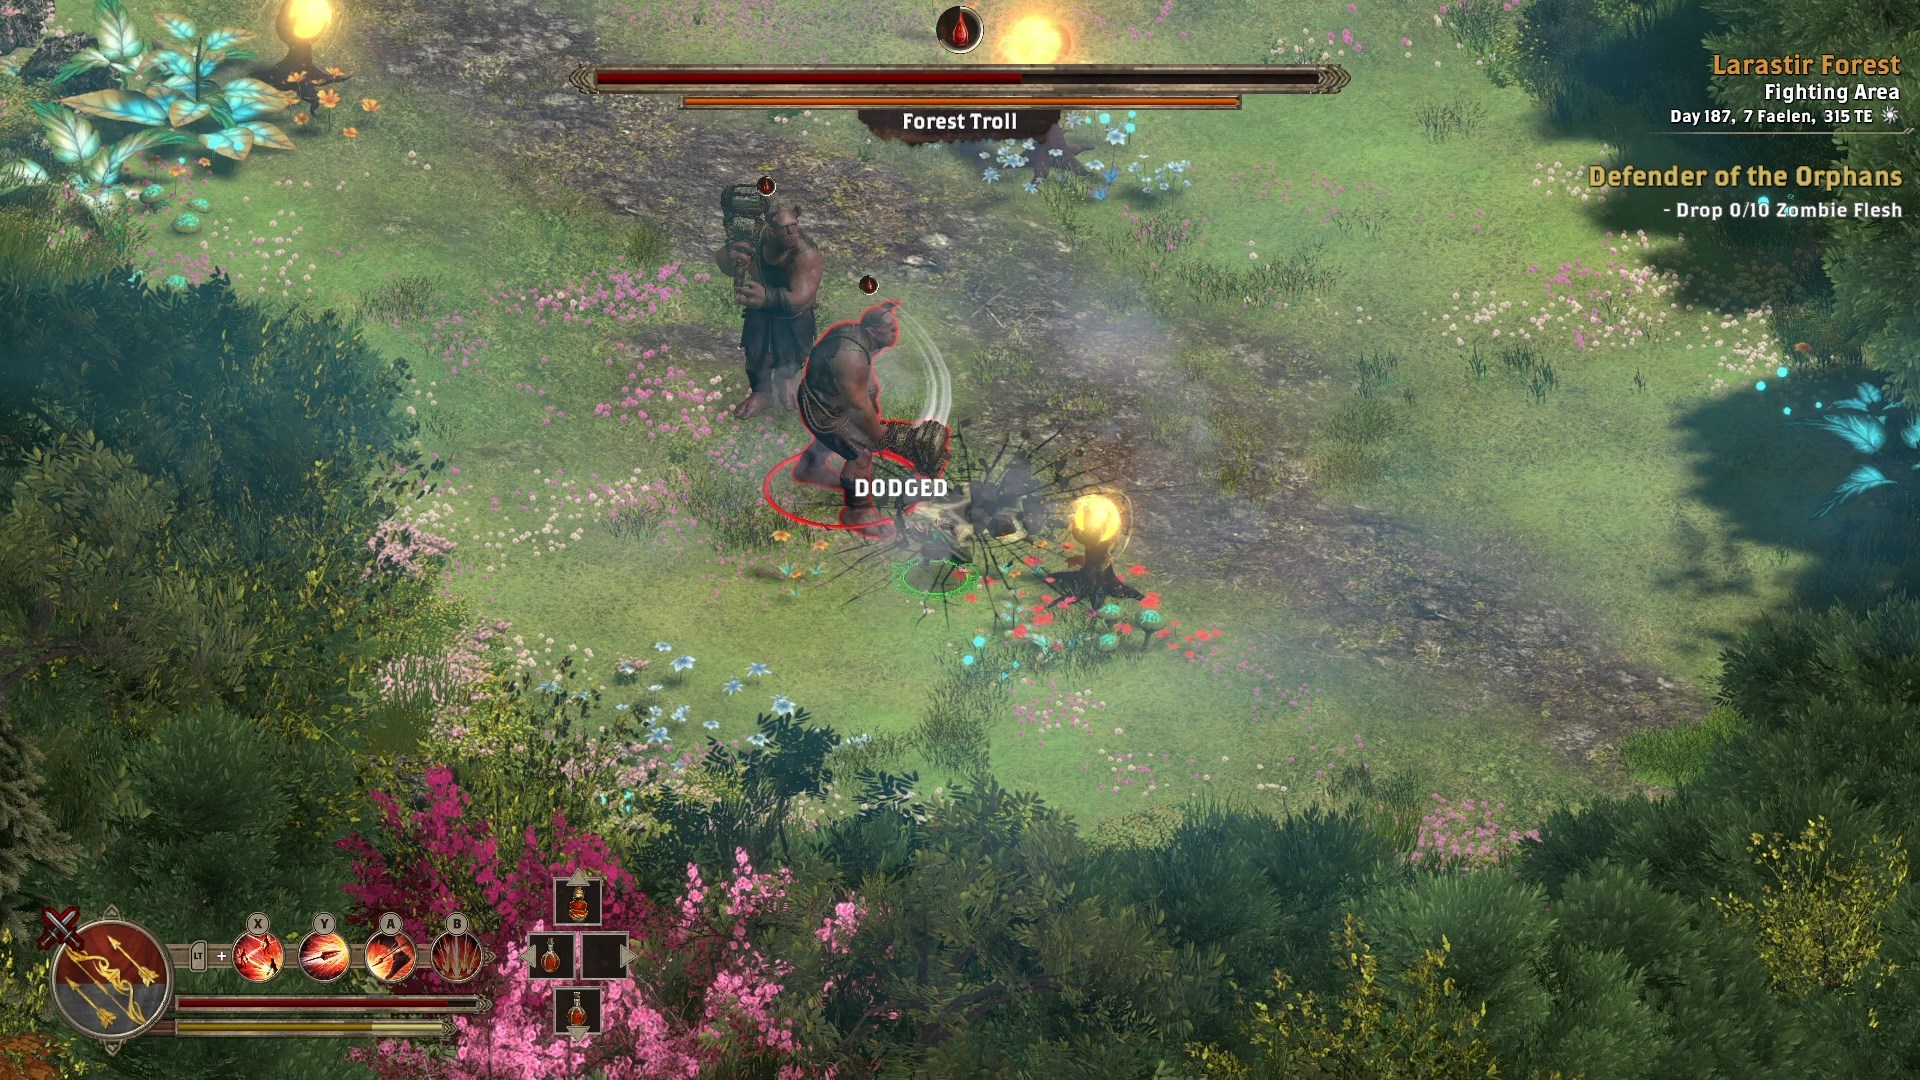 Print Screen de um trecho de gameplay de Alaloth Champions of the Four Kingdoms realizando uma esquiva durante o combate contra um Troll da Floresta